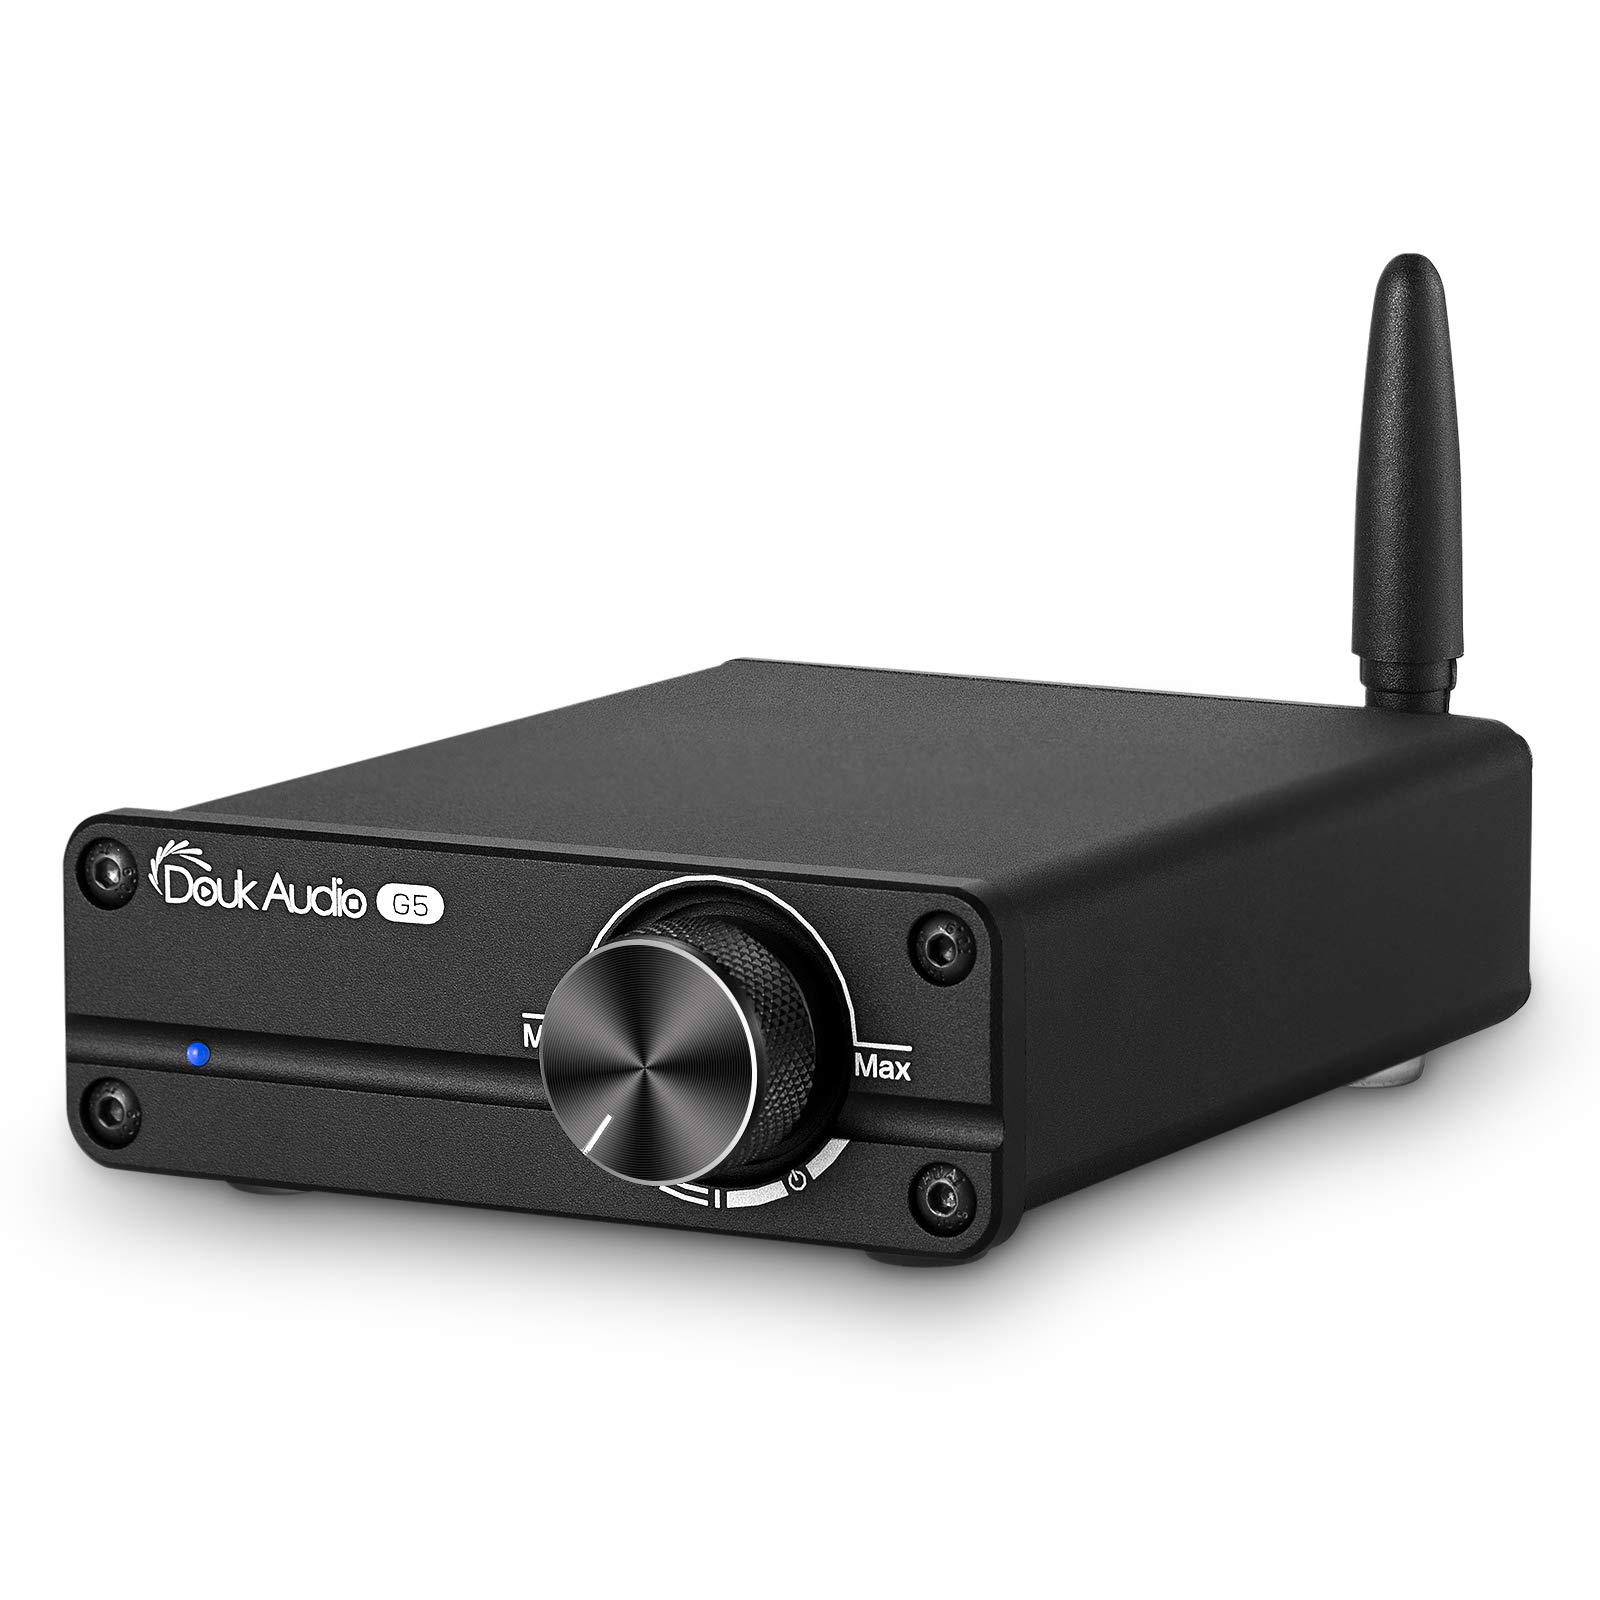 Douk Audio G5 HiFi Bluetooth 5.0 デジタル パワーアンプ Mini クラスDステレオ アンプ (ブラックカラー)